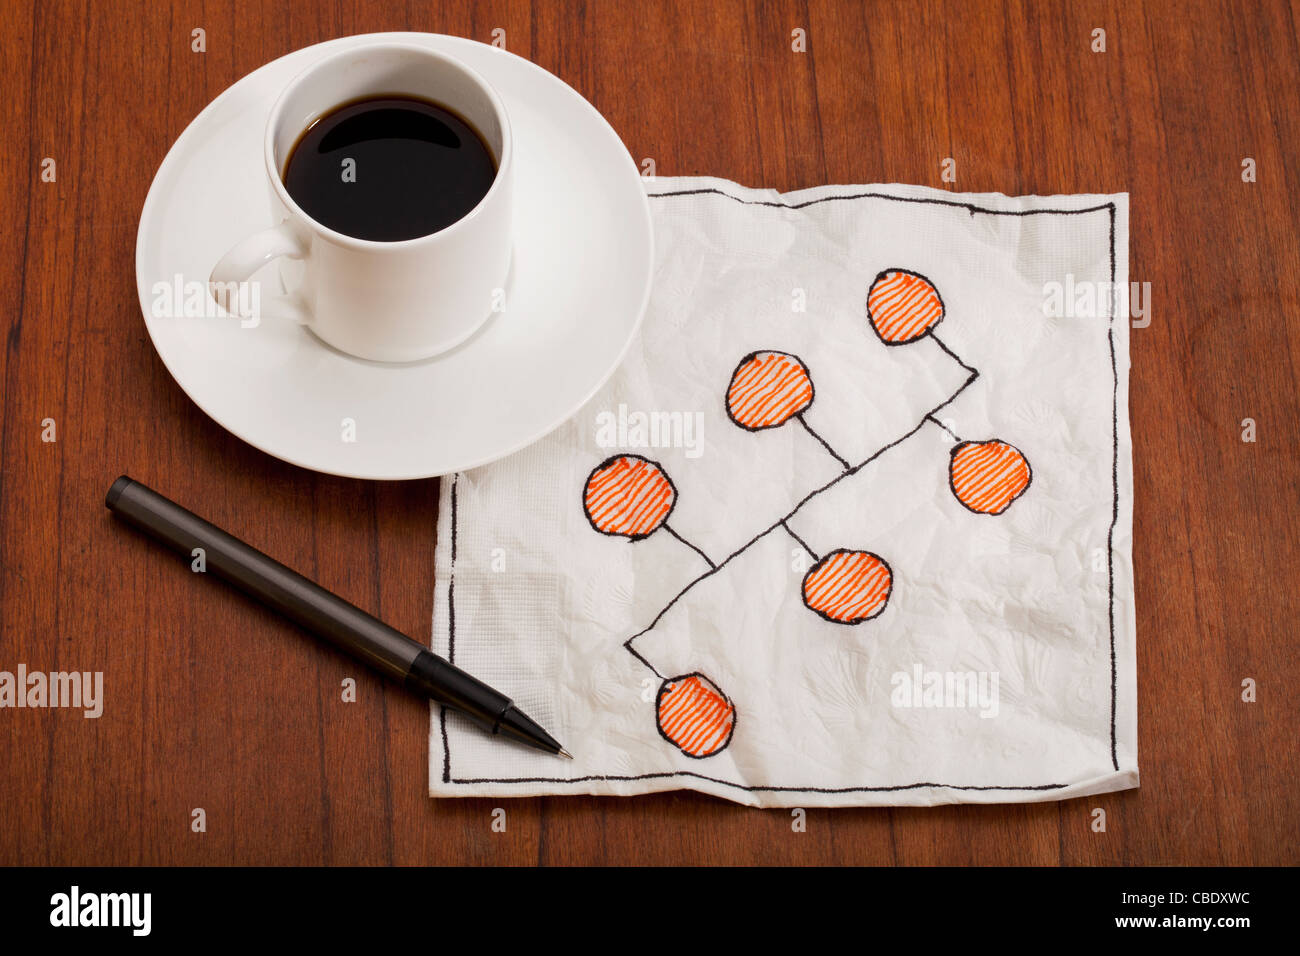 Bus ou backbone network model - Serviette doodle avec tasse à café expresso sur table Banque D'Images